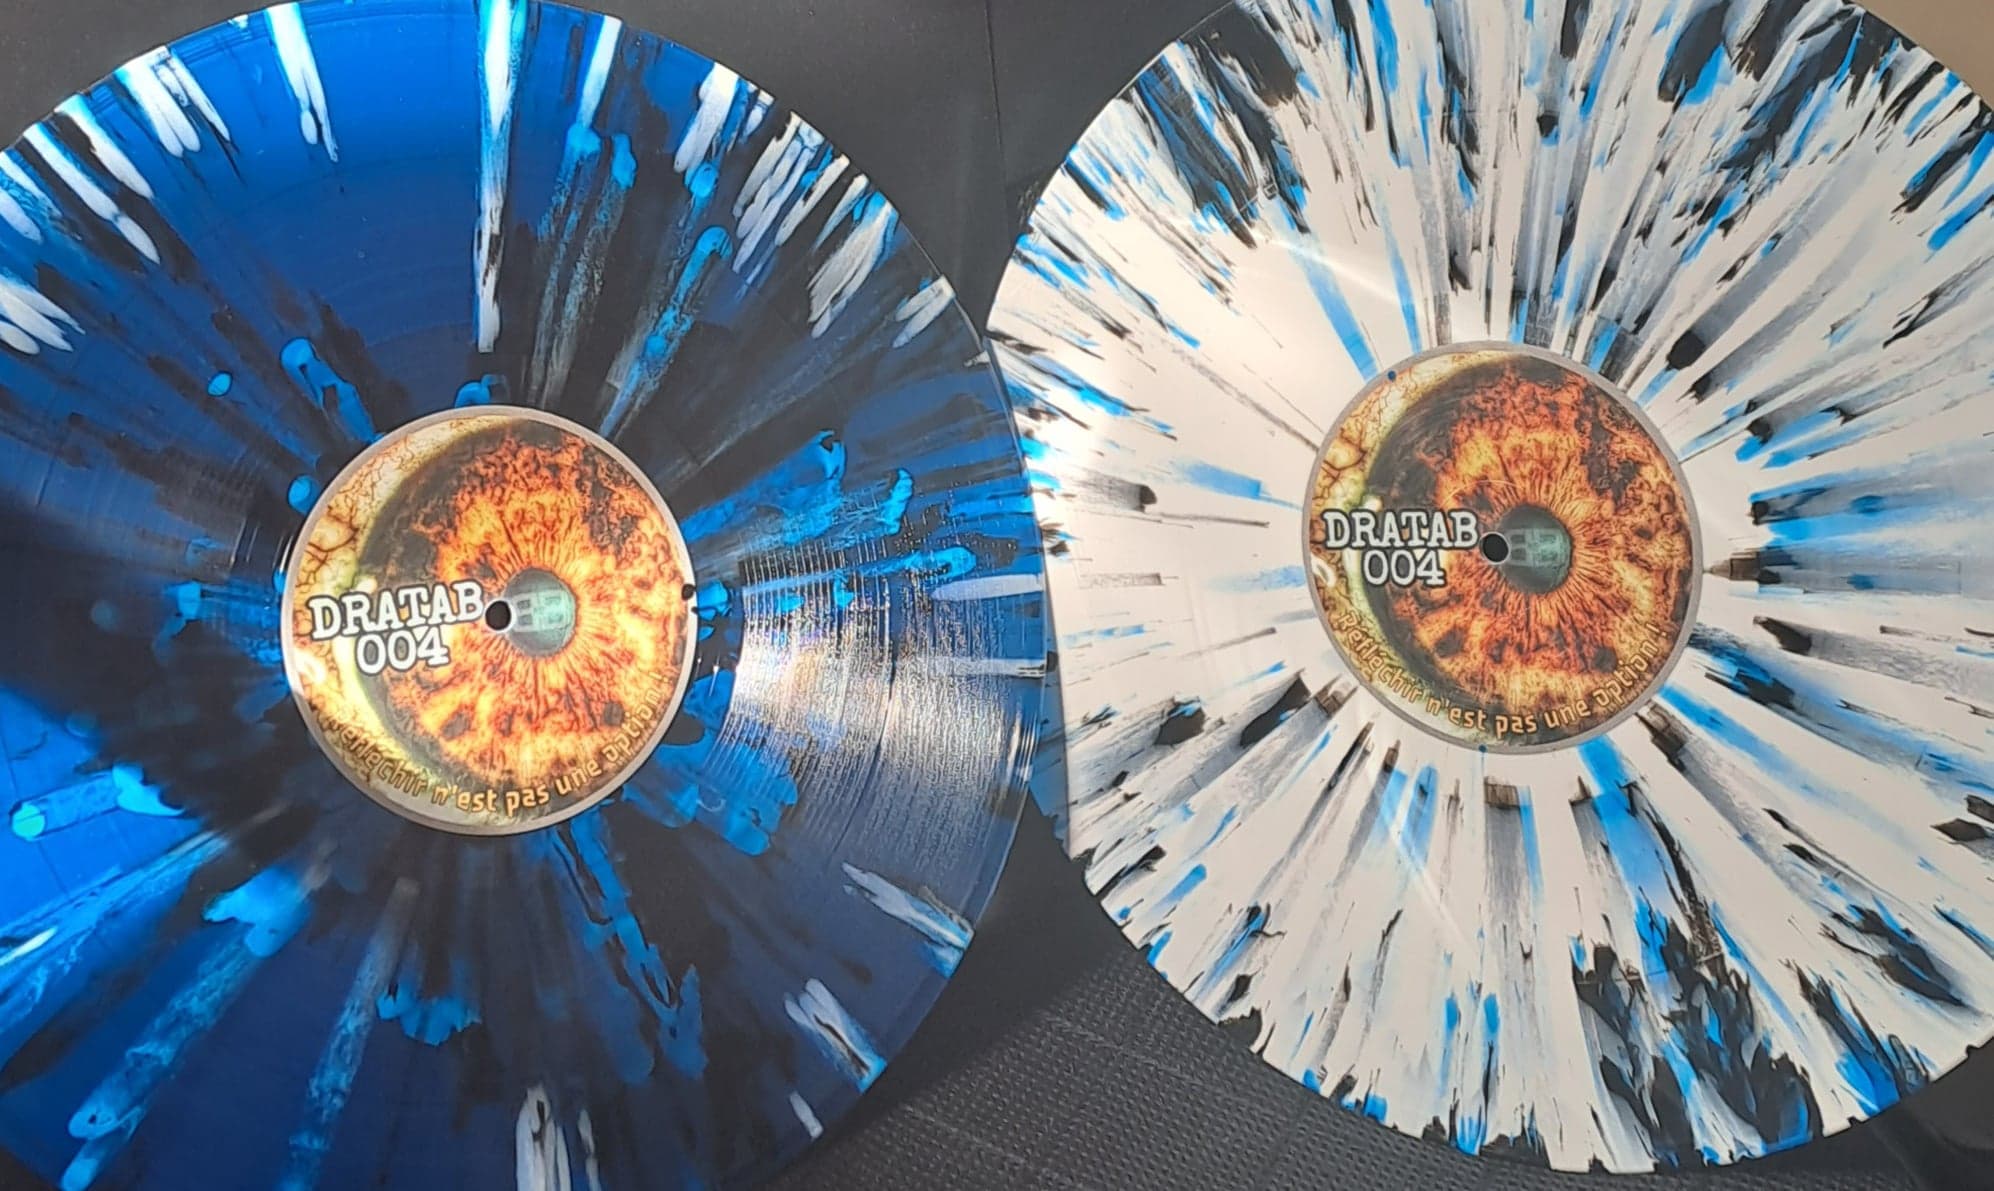 Dratab 004 (splatter) (toute dernière copie en stock) en blanc et bleu) - vinyle tribecore